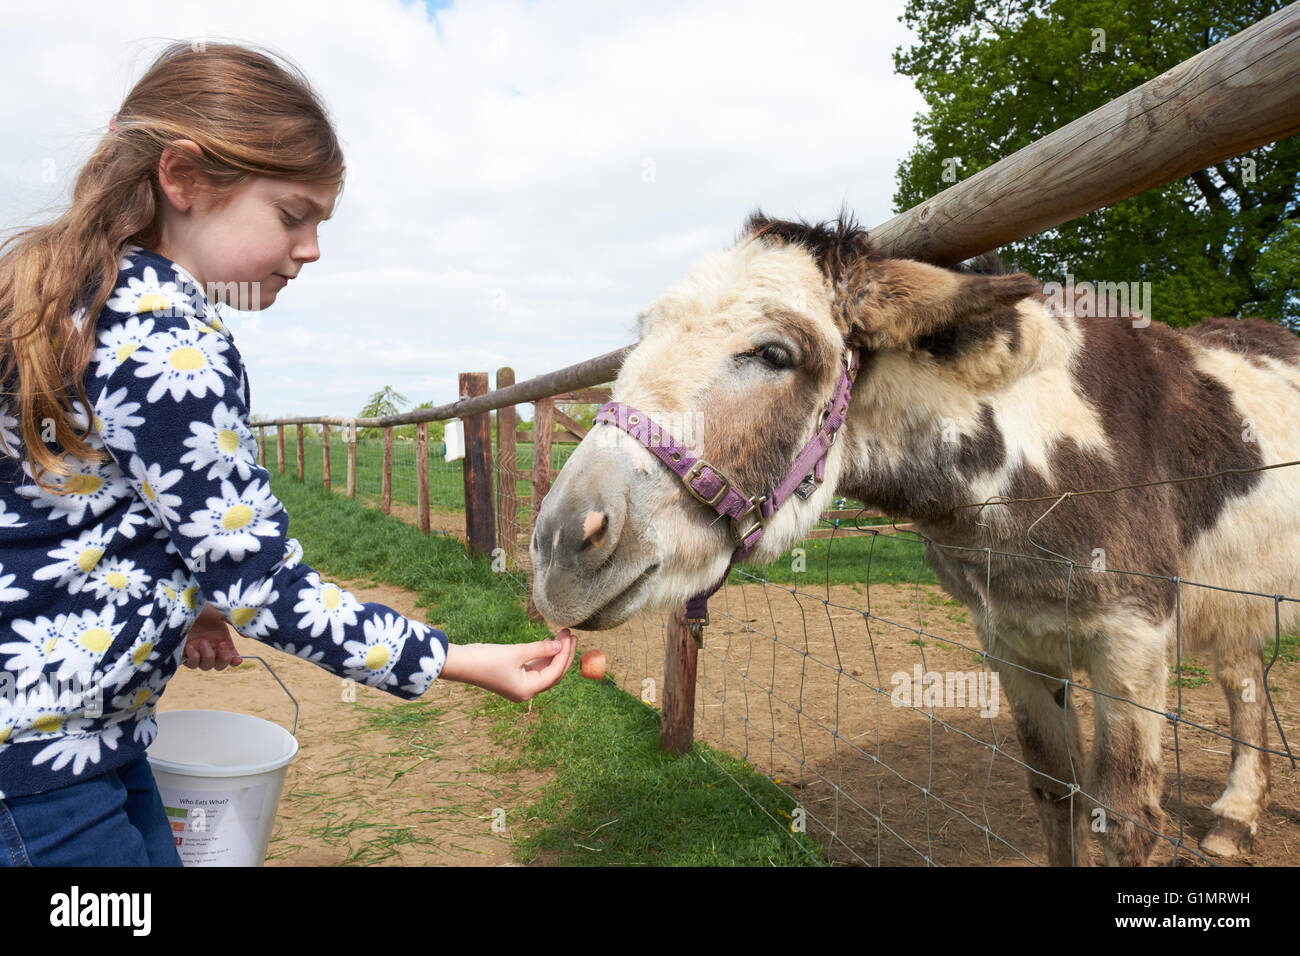 Jeune fille Main Nourrir un âne dans un champ Banque D'Images